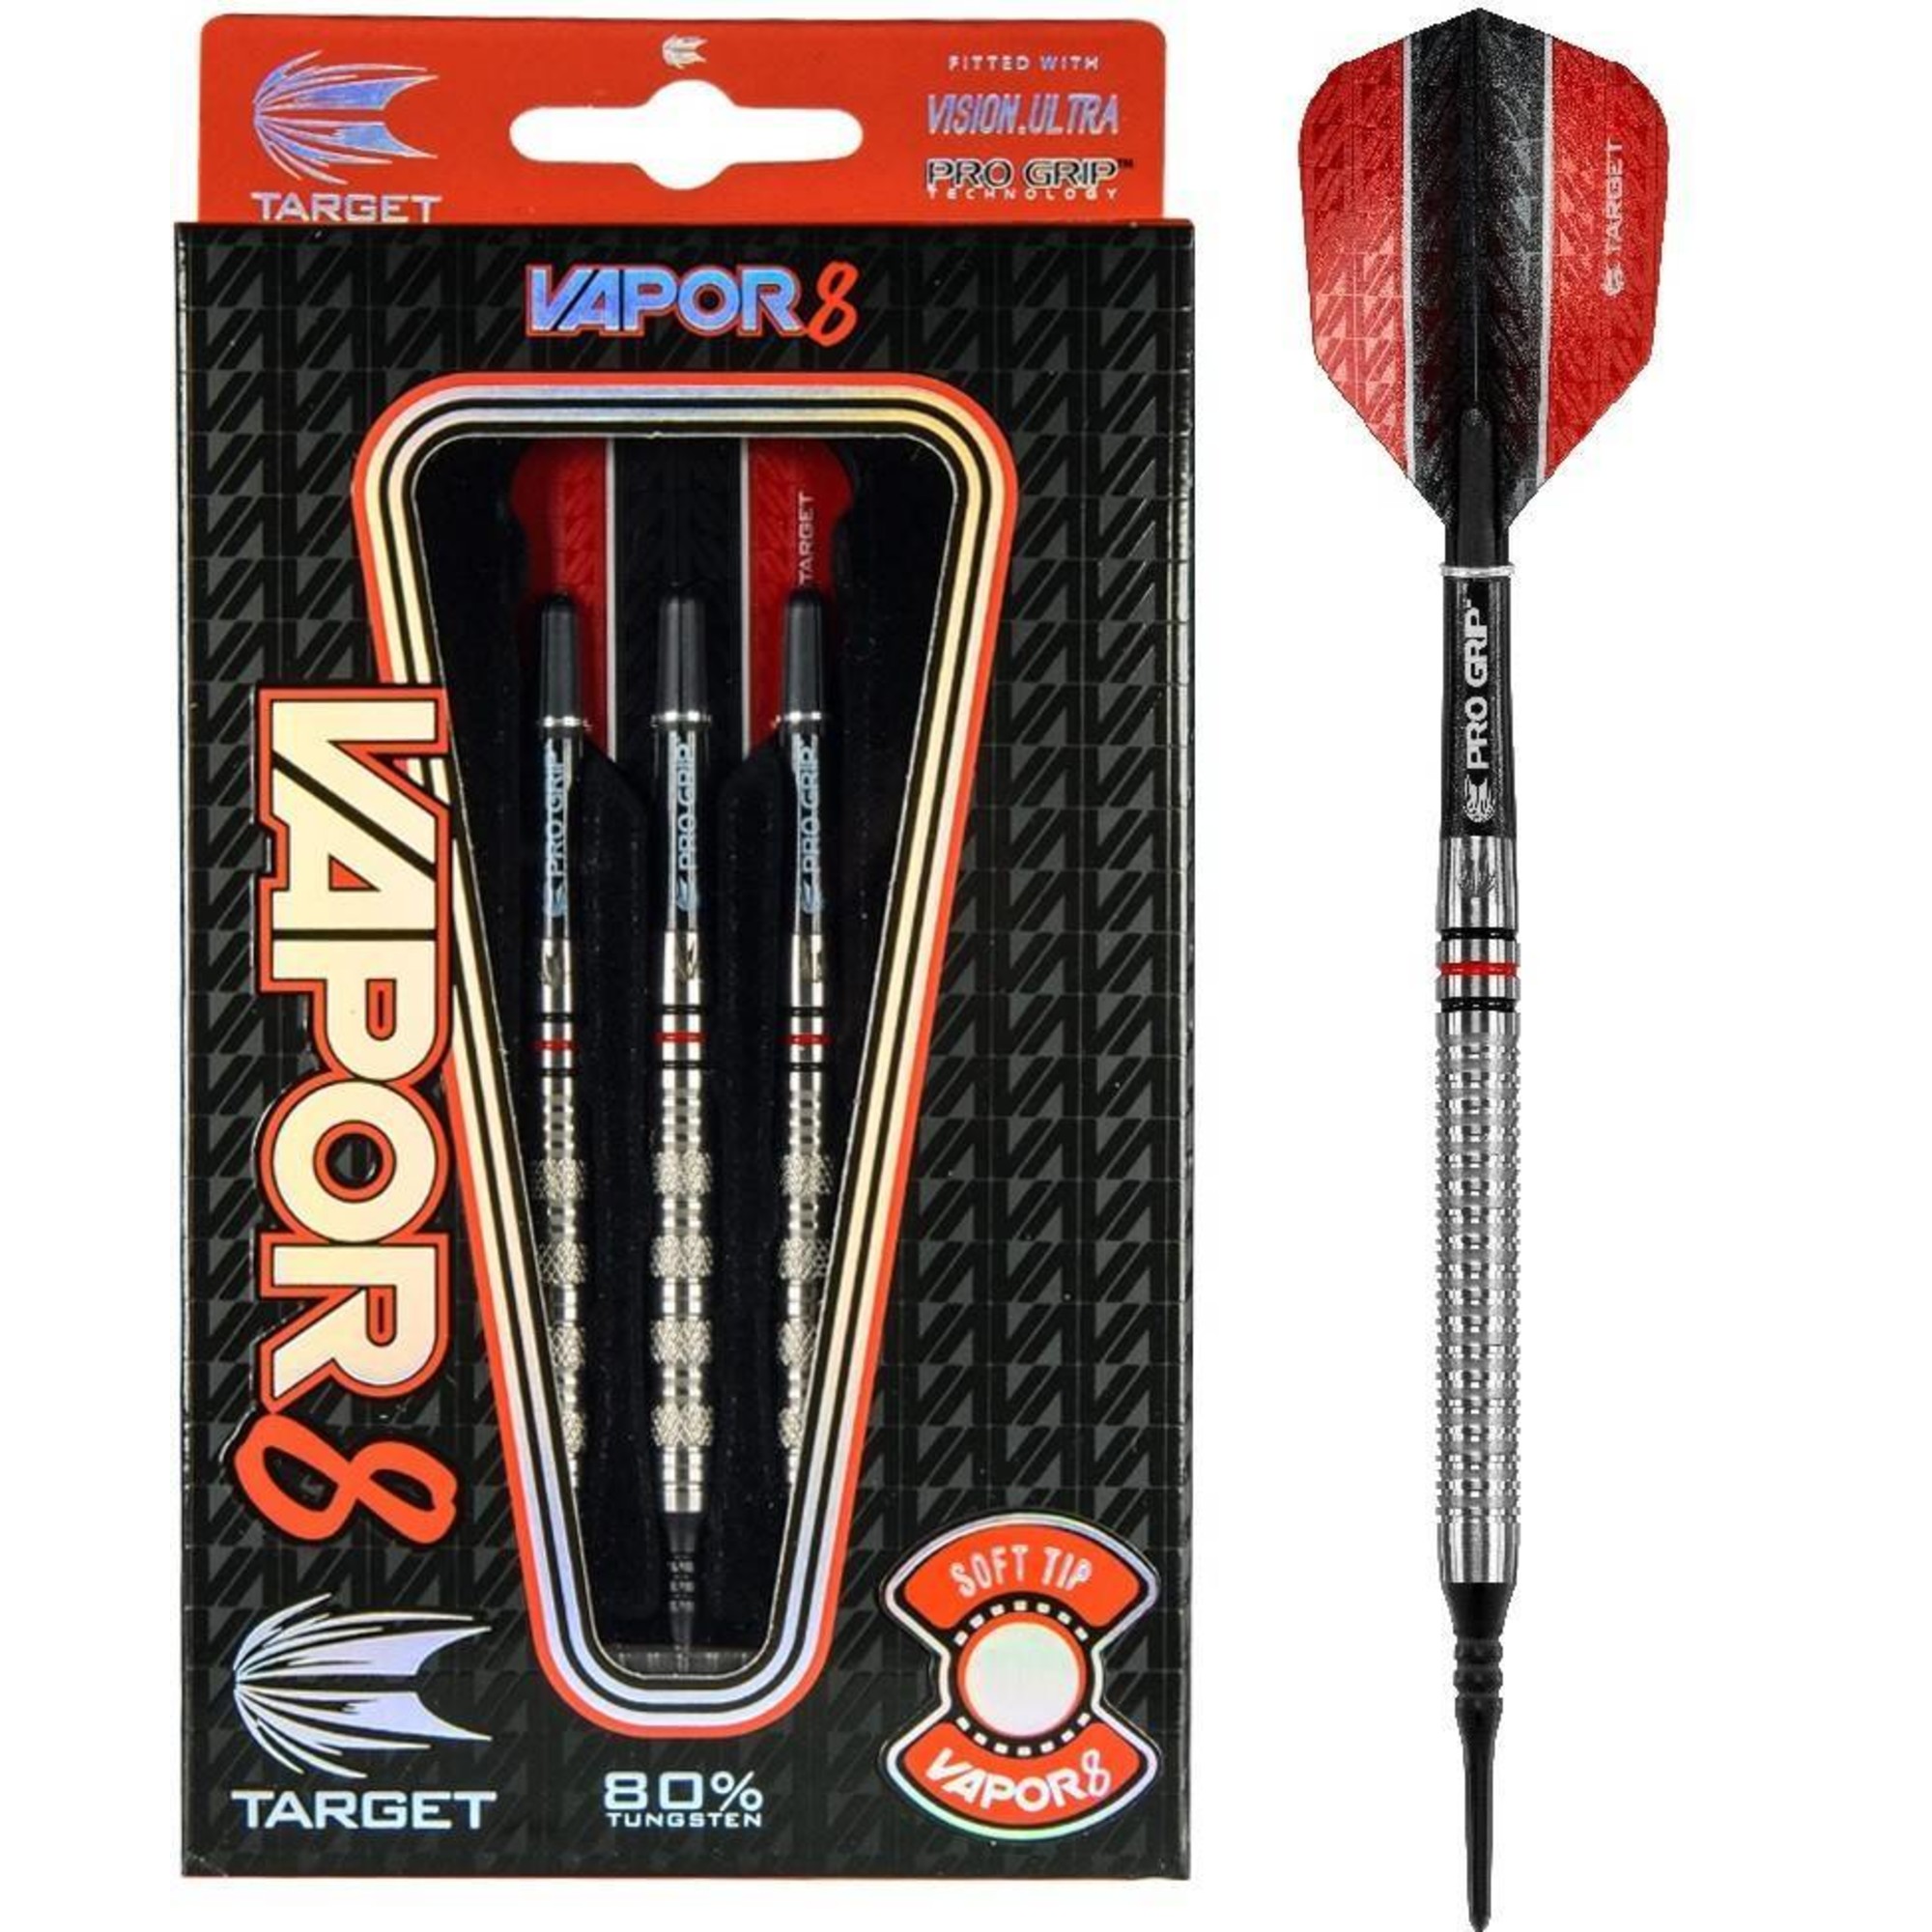 vapour 8 darts